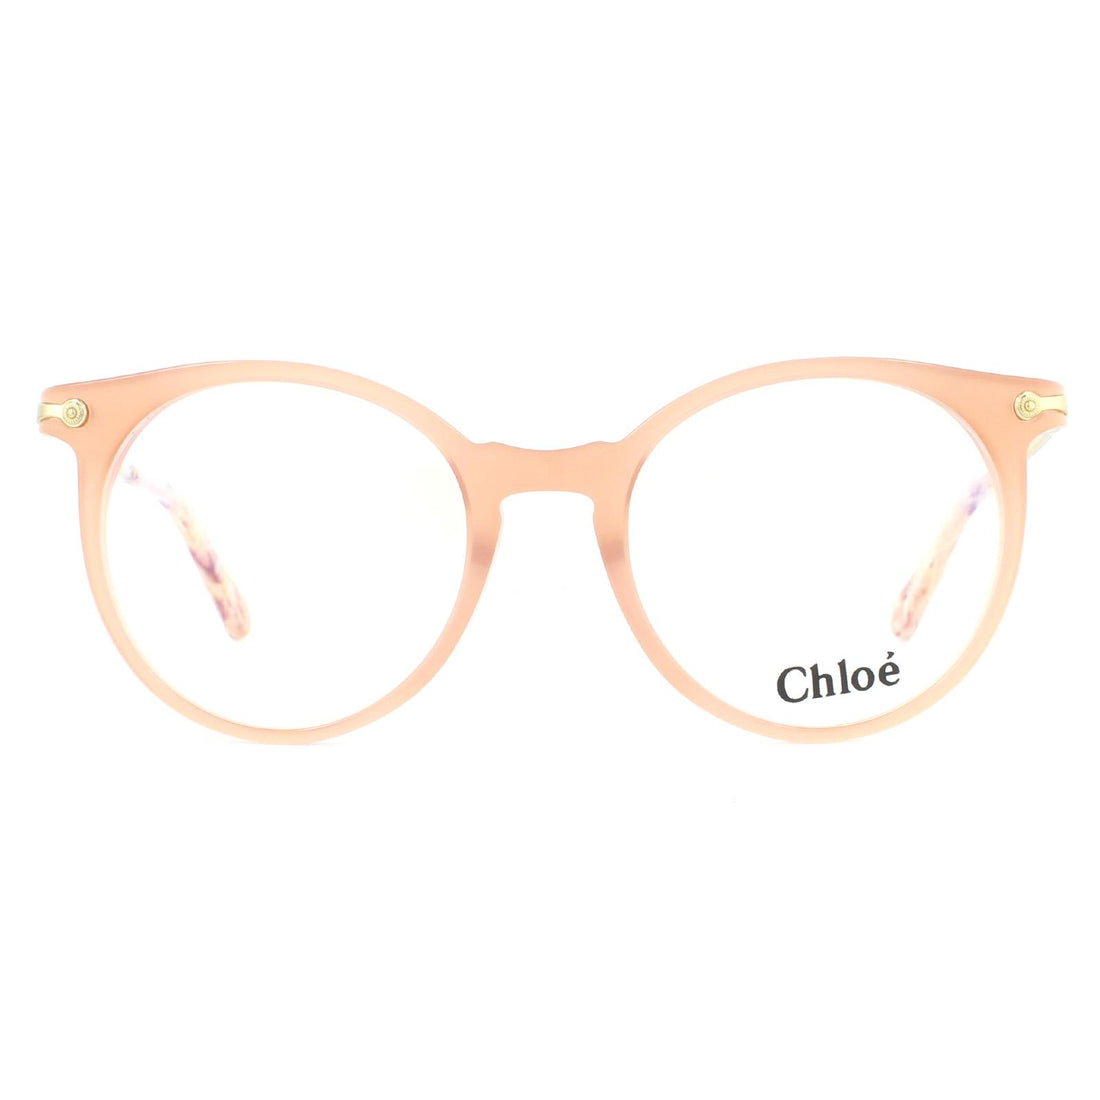 Chloe CE2735 Glasses Frames Havana